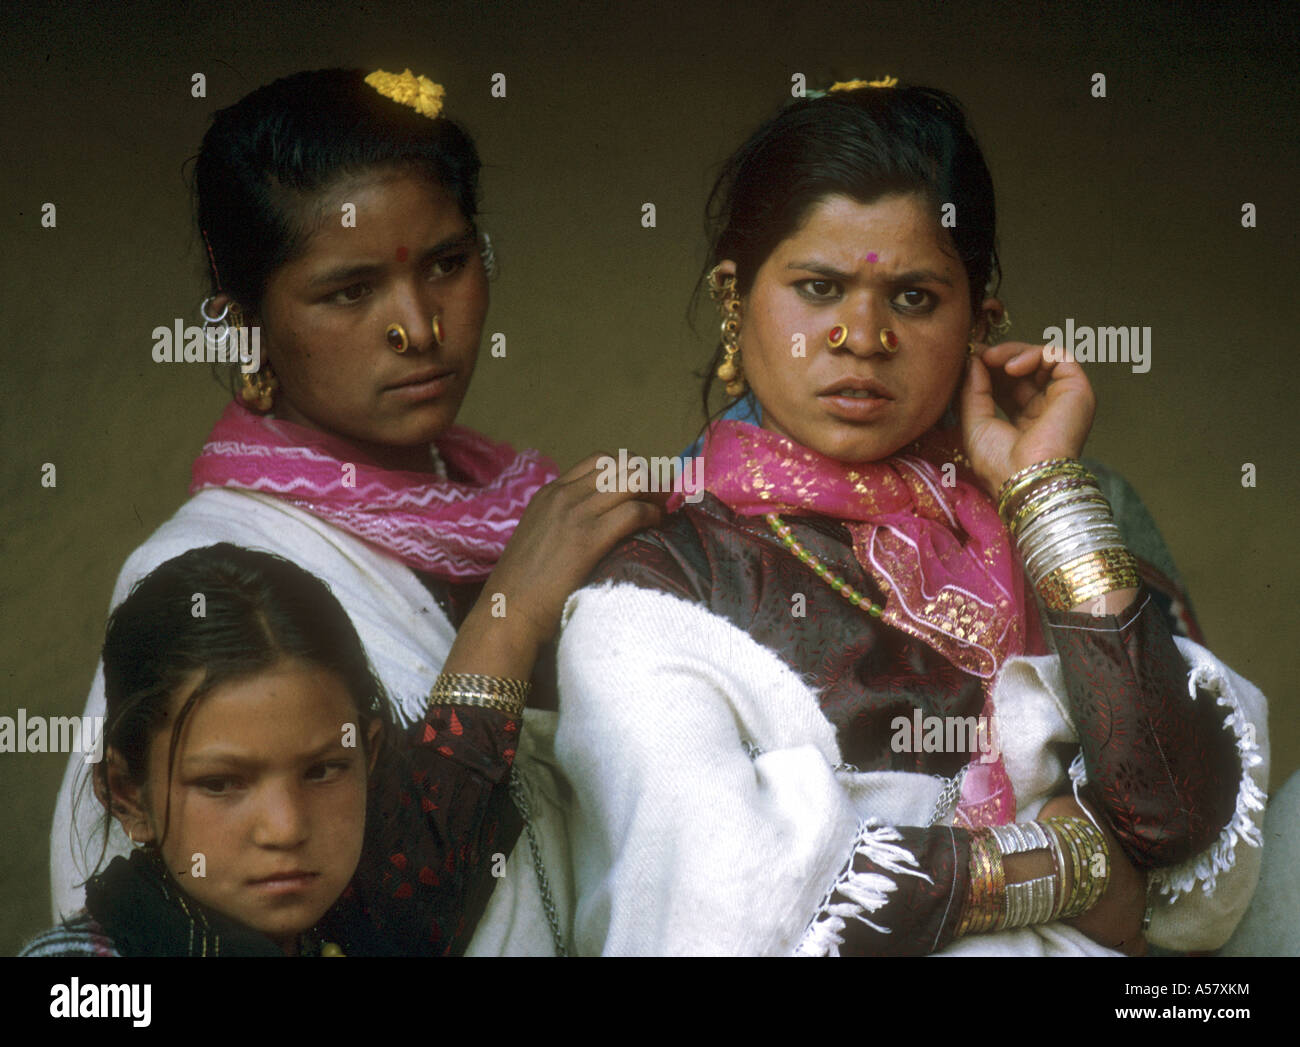 Painet ha2026 4099 Indien Pahari Mädchen Frauen Manali Kulu Valley Land sich entwickelnde Nation entwickelt wirtschaftlich Kultur. Stockfoto